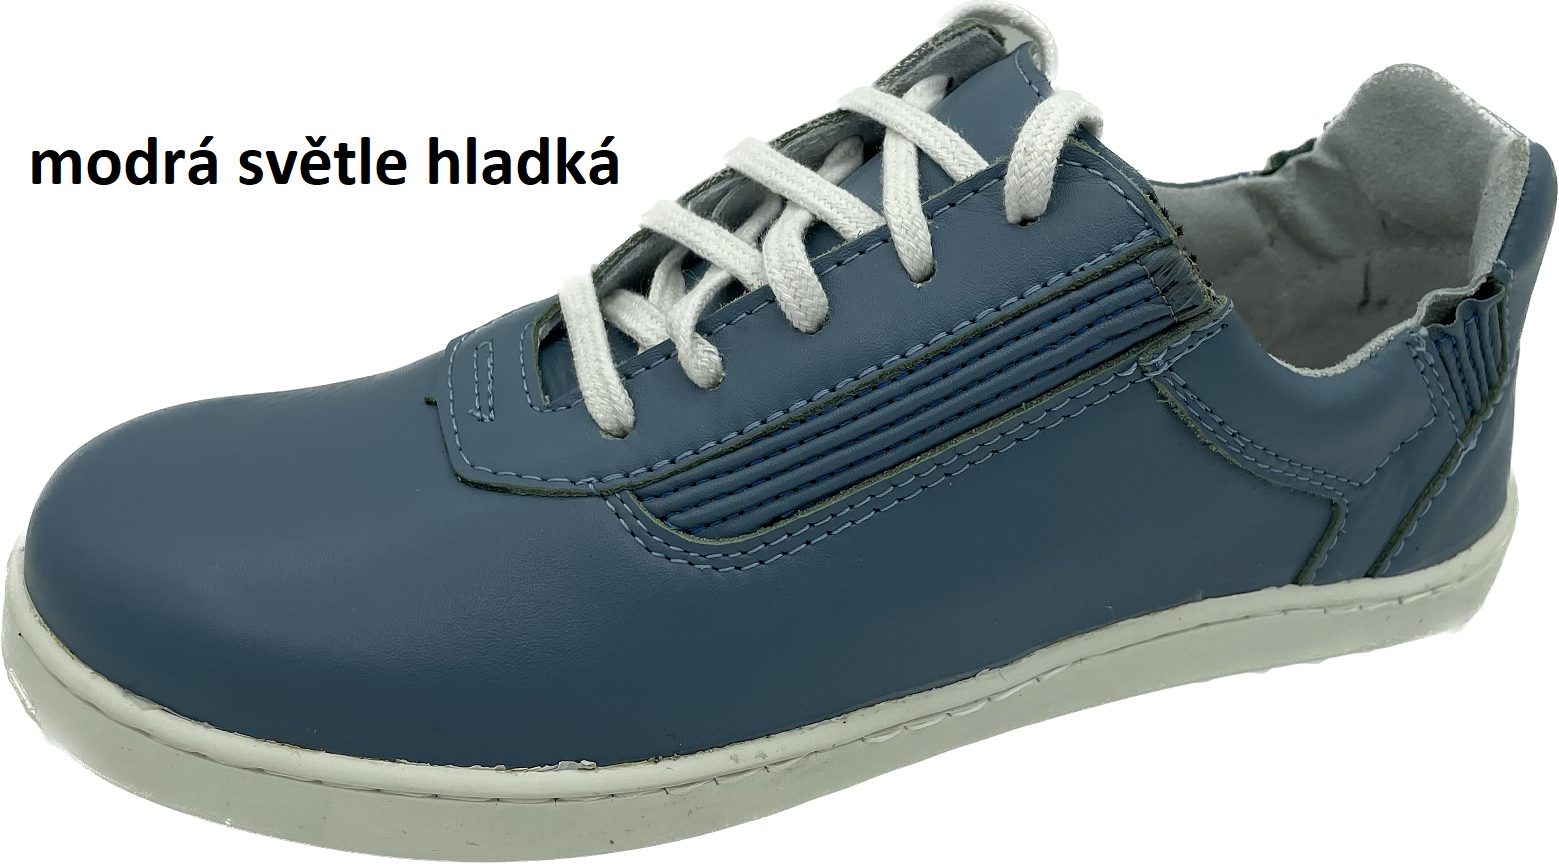 Boty Hanák Active šálová - SKLADEM Barva usně: modrá světle hladká, Velikosti obuvi: 39